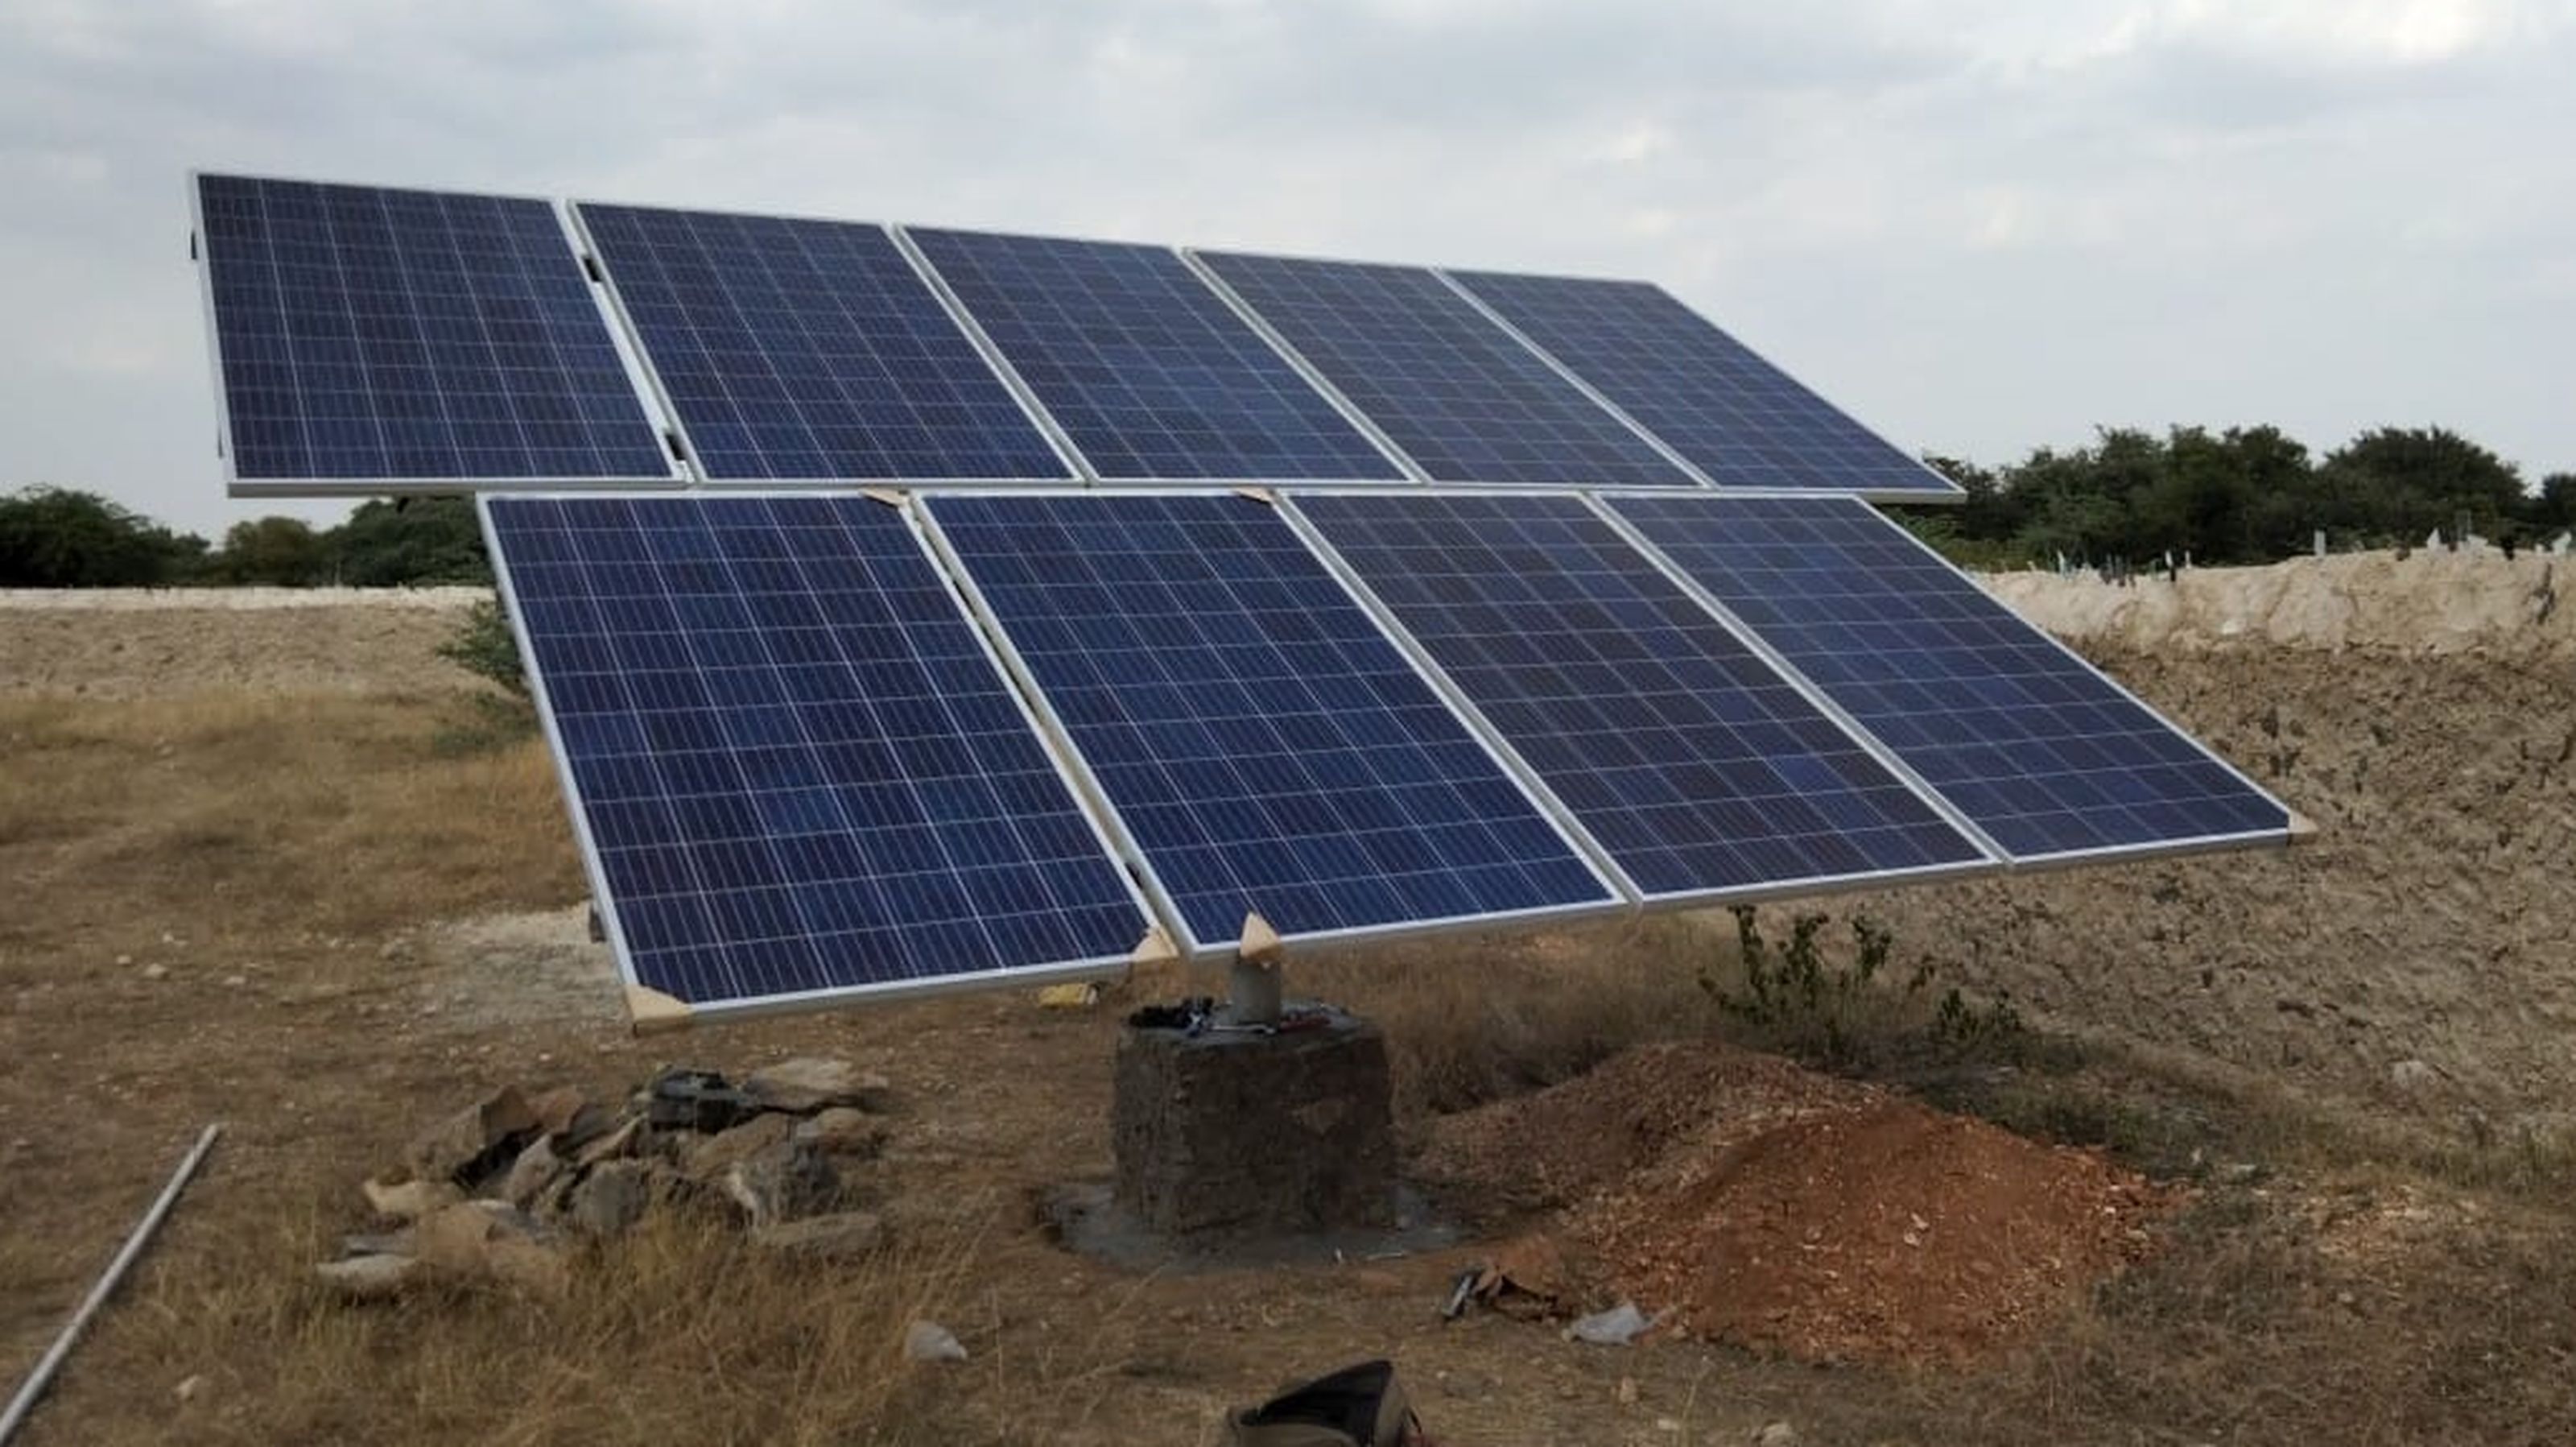  राजसमंद के निकट एक गांव में लगे सौर ऊर्जा उपकरण।, राजसमंद के निकट एक गांव में लगे सौर ऊर्जा उपकरण।